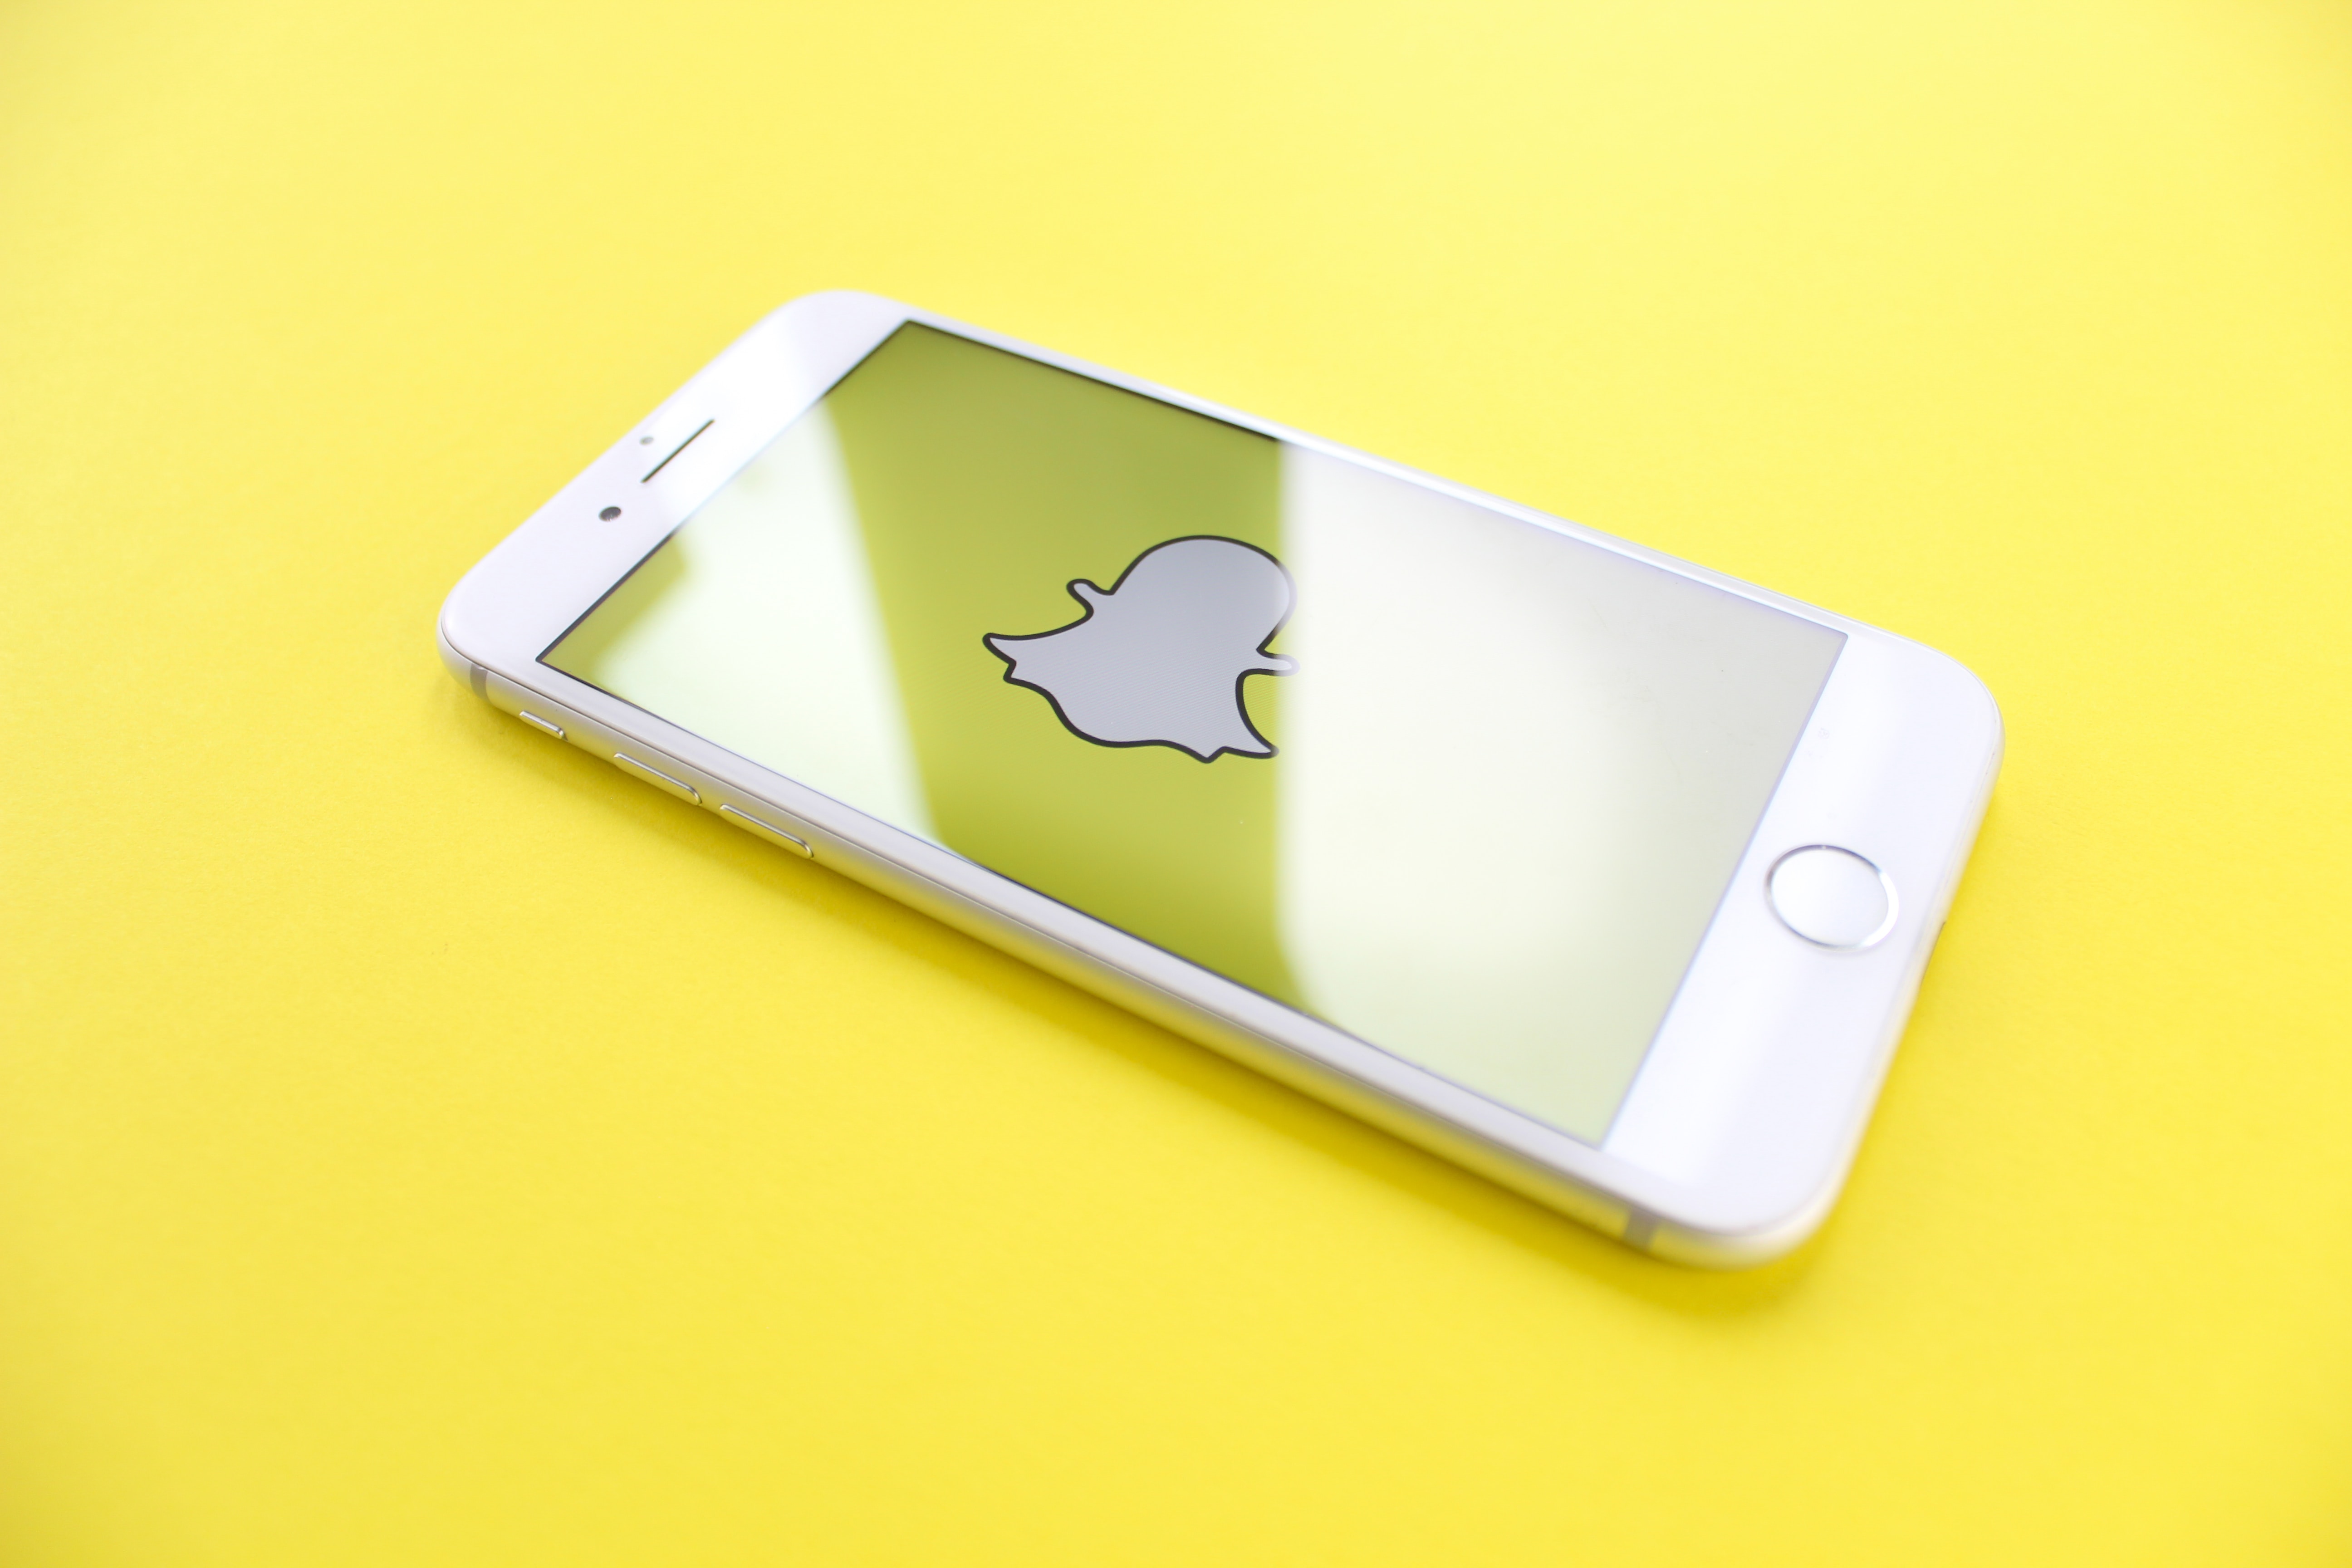 还没布局社交营销赛道？全球 Z 世代超爱的 Snapchat 了解一下！